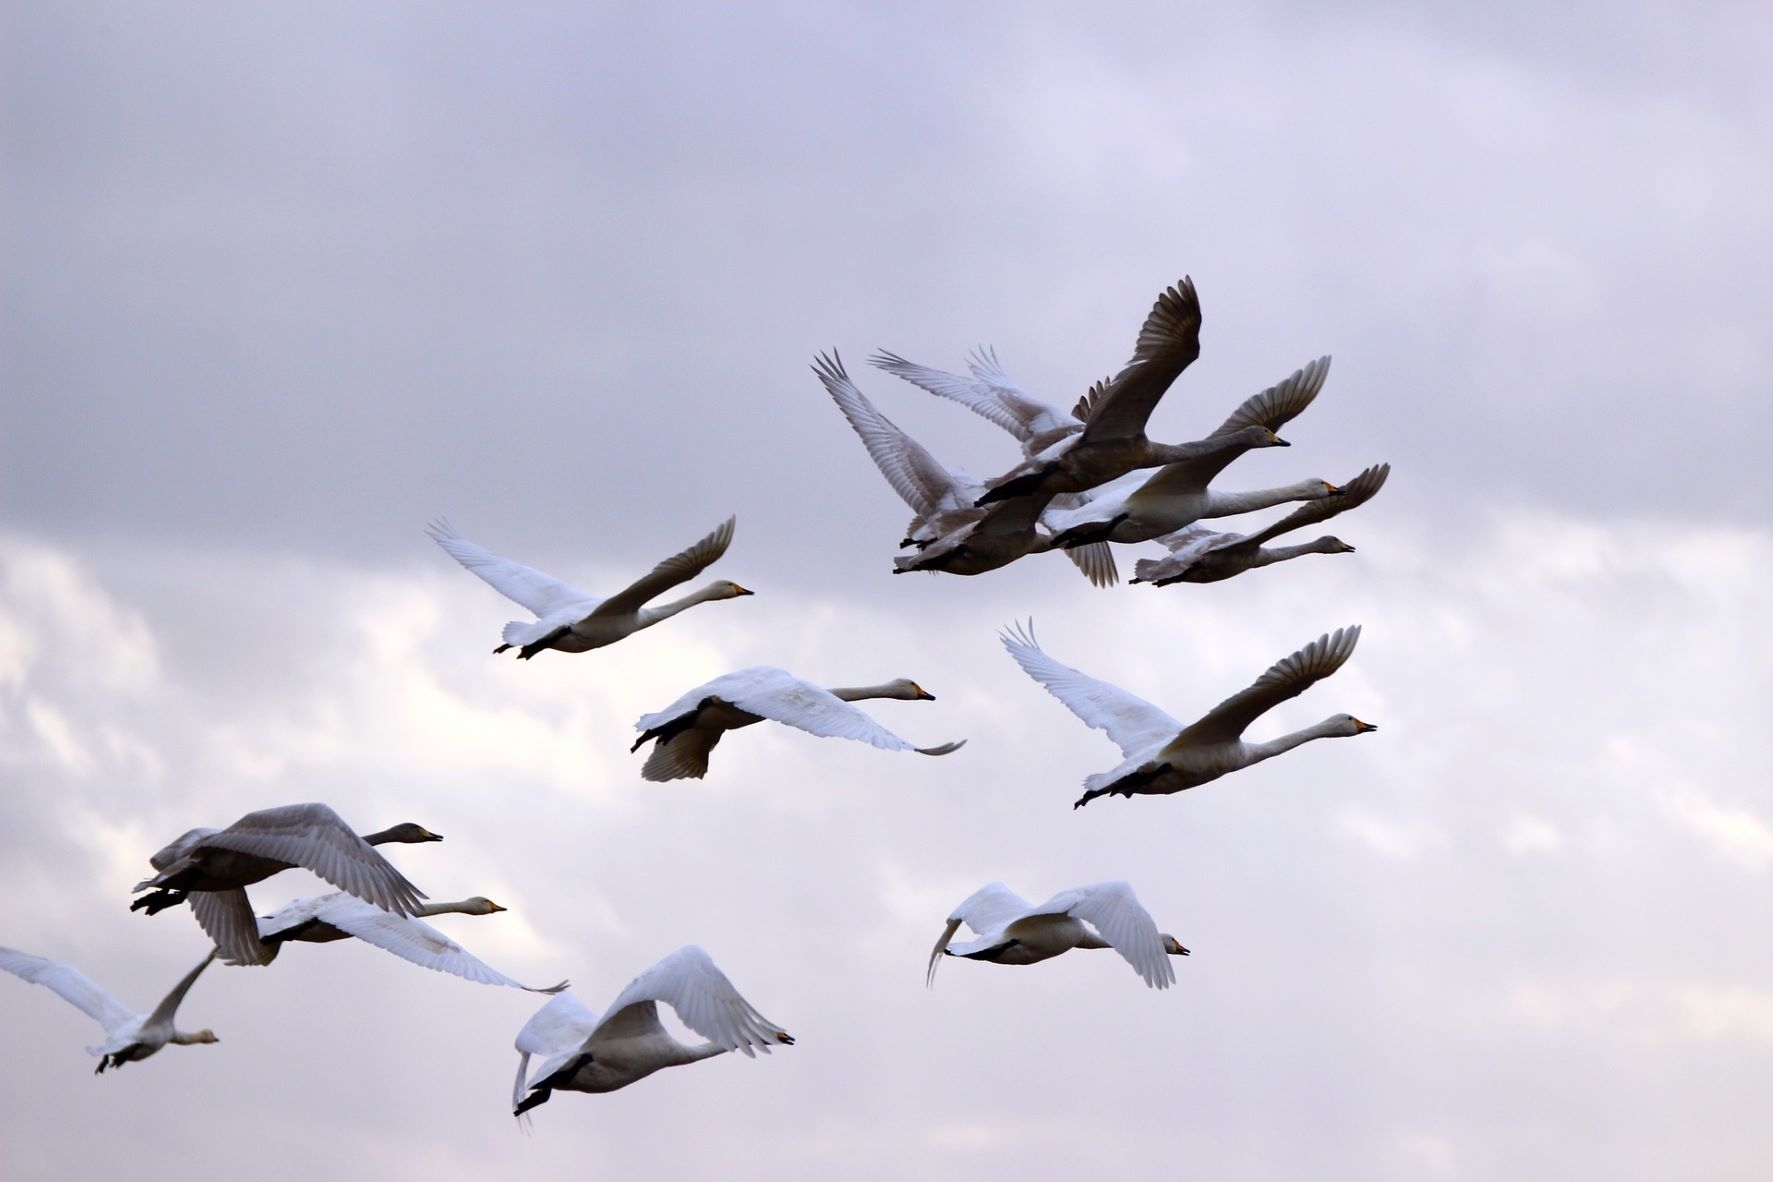 Į gimtuosius kraštus sugrįžtantys paukščiai kartu parneša ir paukščių gripo riziką